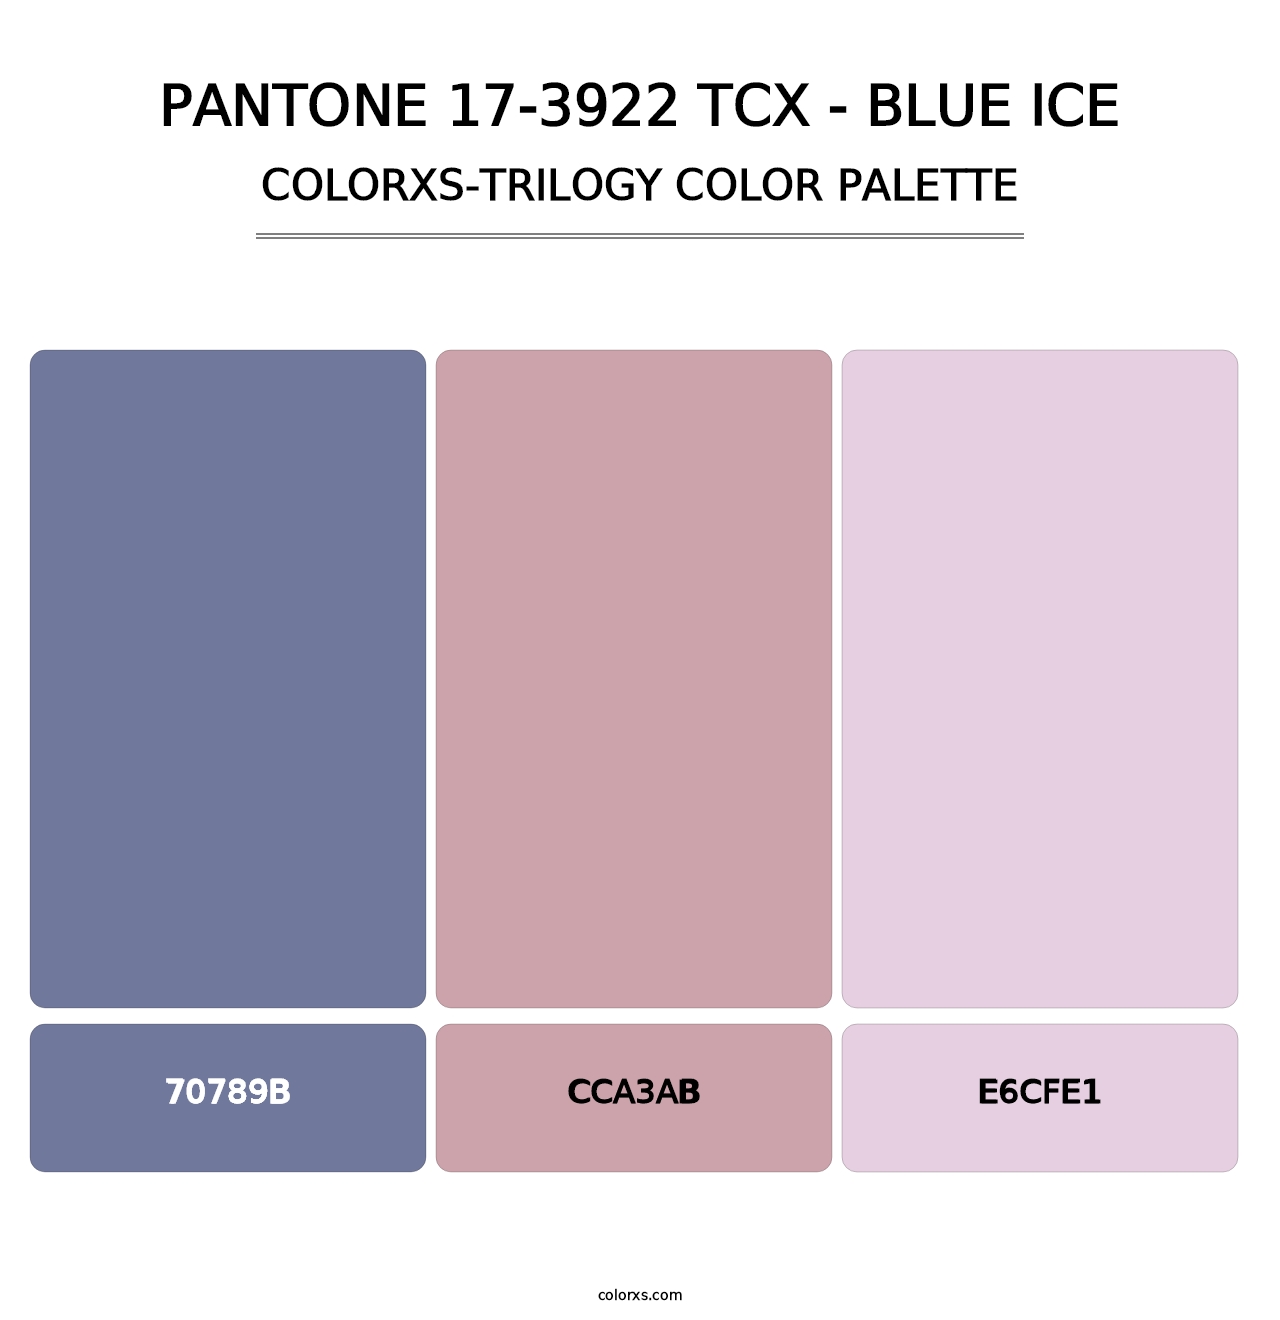 PANTONE 17-3922 TCX - Blue Ice - Colorxs Trilogy Palette